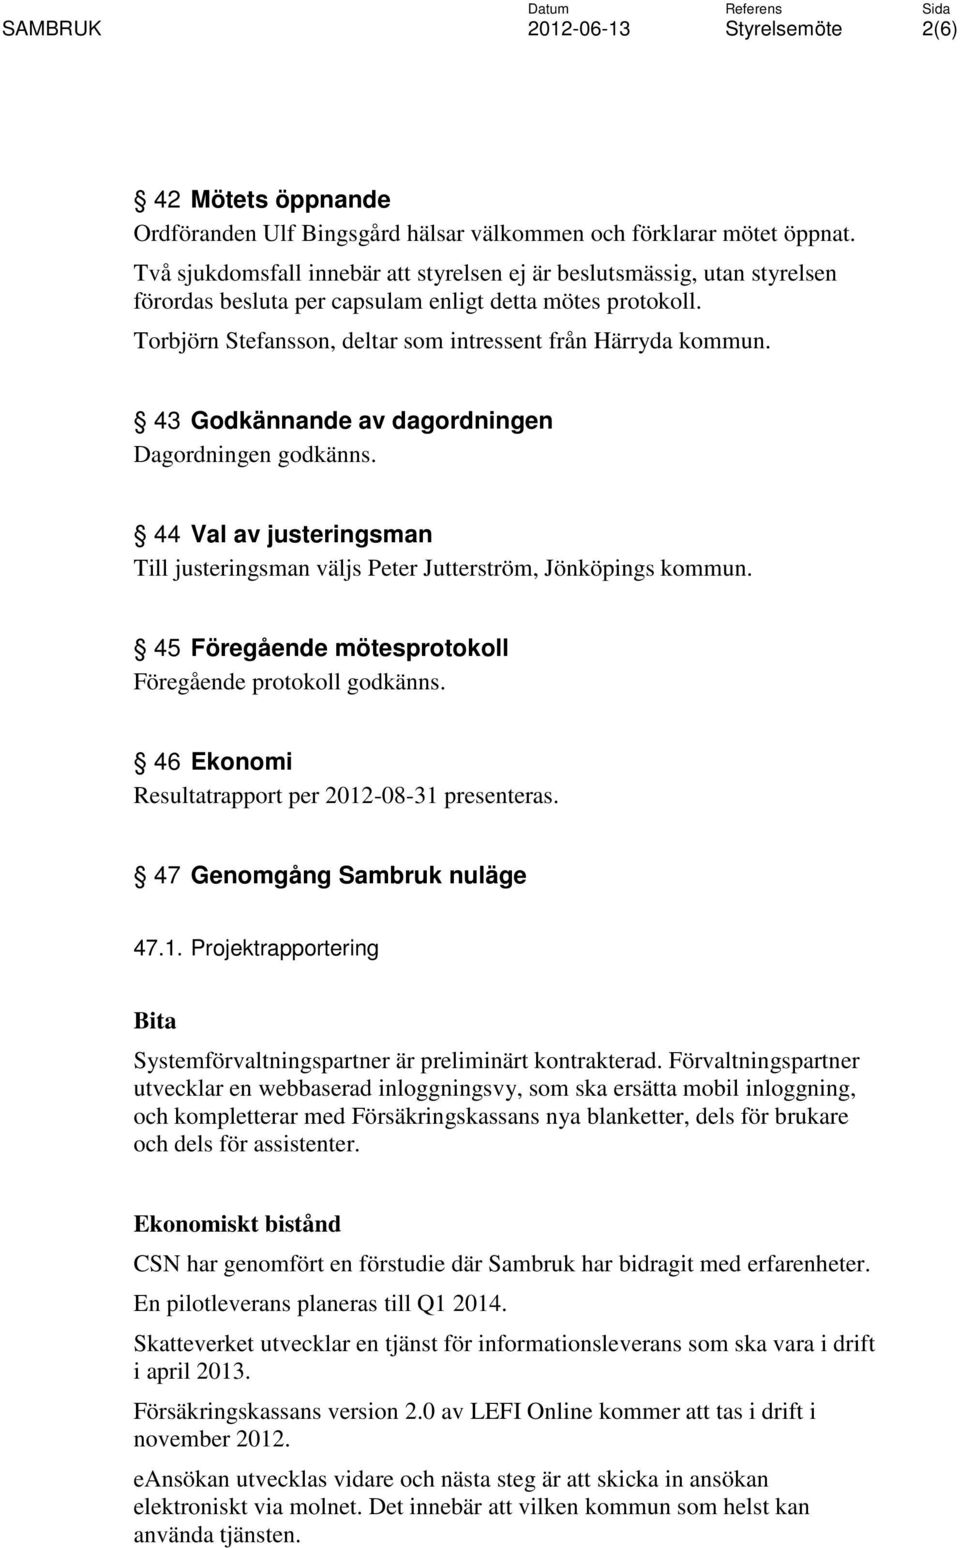 43 Godkännande av dagordningen Dagordningen godkänns. 44 Val av justeringsman Till justeringsman väljs Peter Jutterström, Jönköpings kommun. 45 Föregående mötesprotokoll Föregående protokoll godkänns.